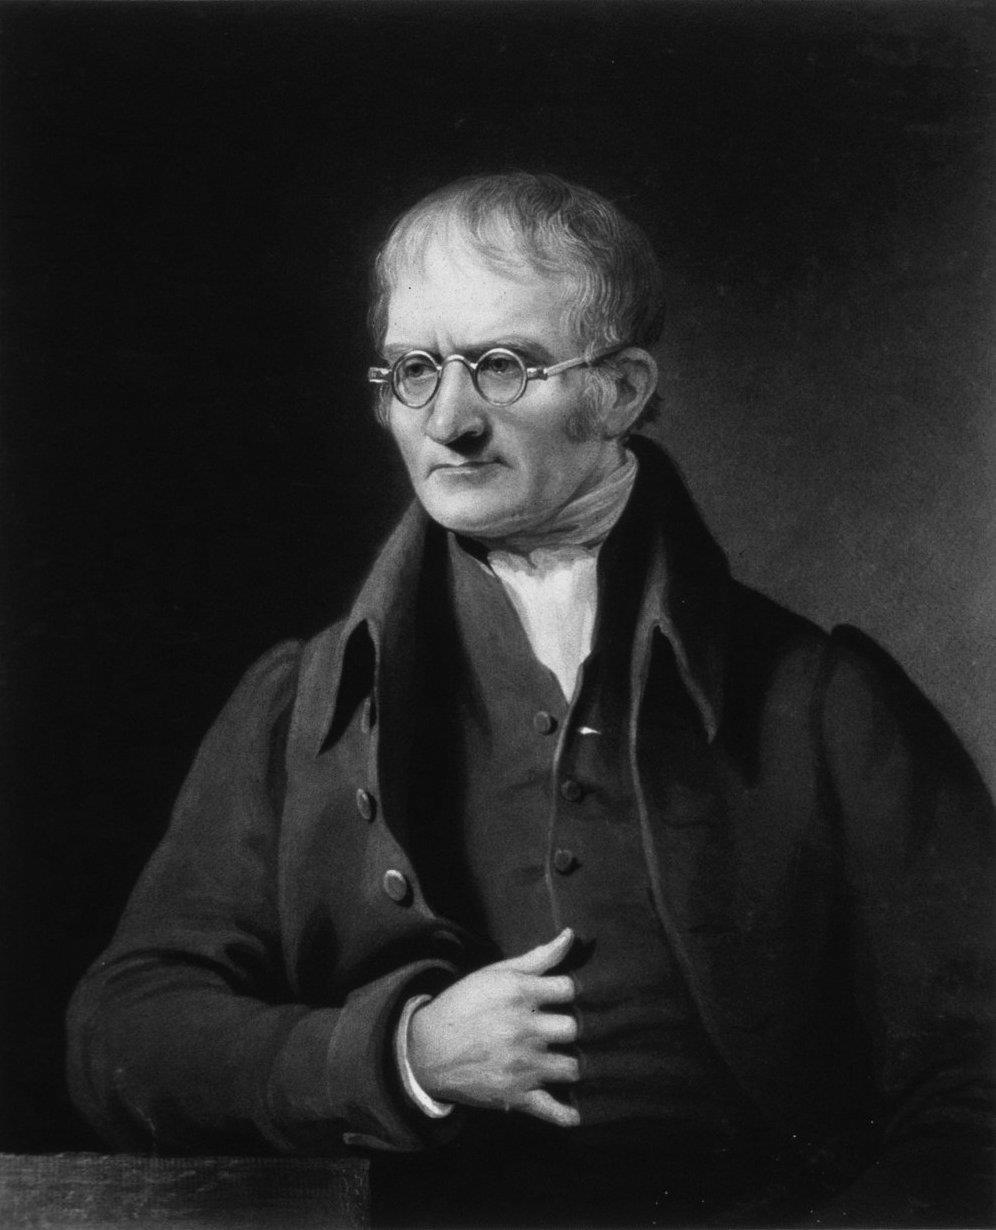 Modelo de Dalton No início dos anos 1800, o inglês John Dalton fez